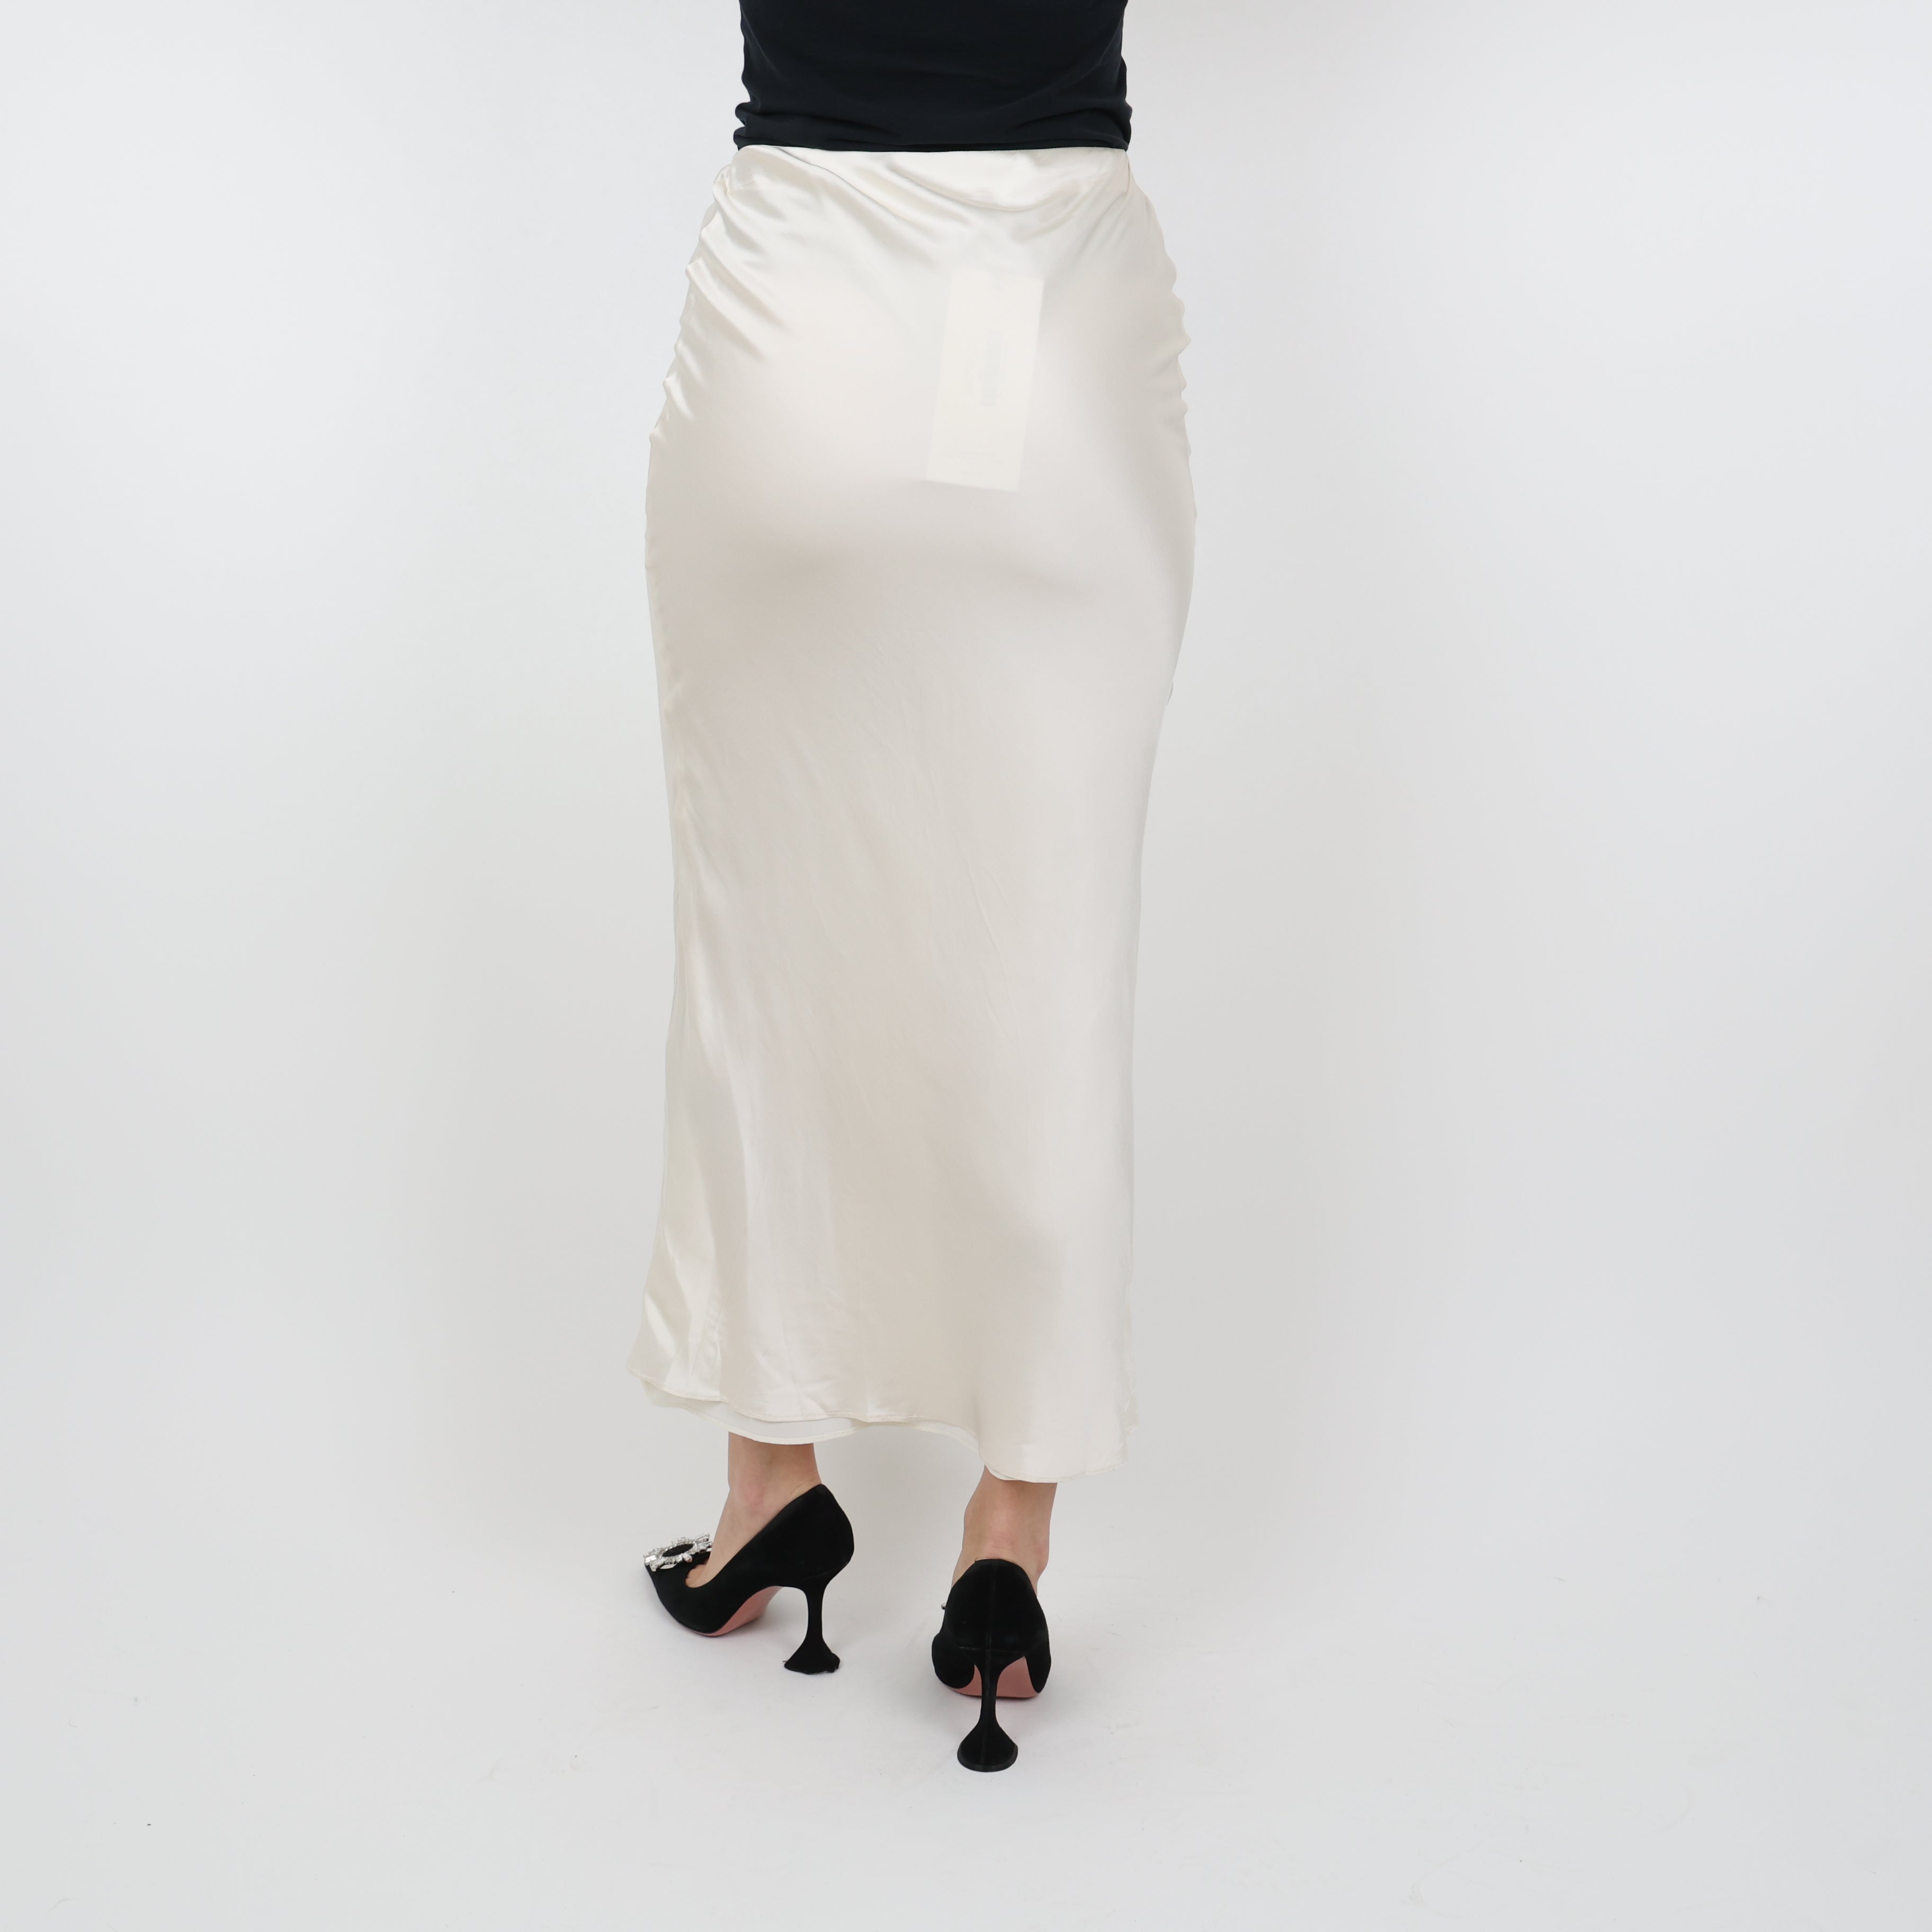 Skirt, UK Size 4